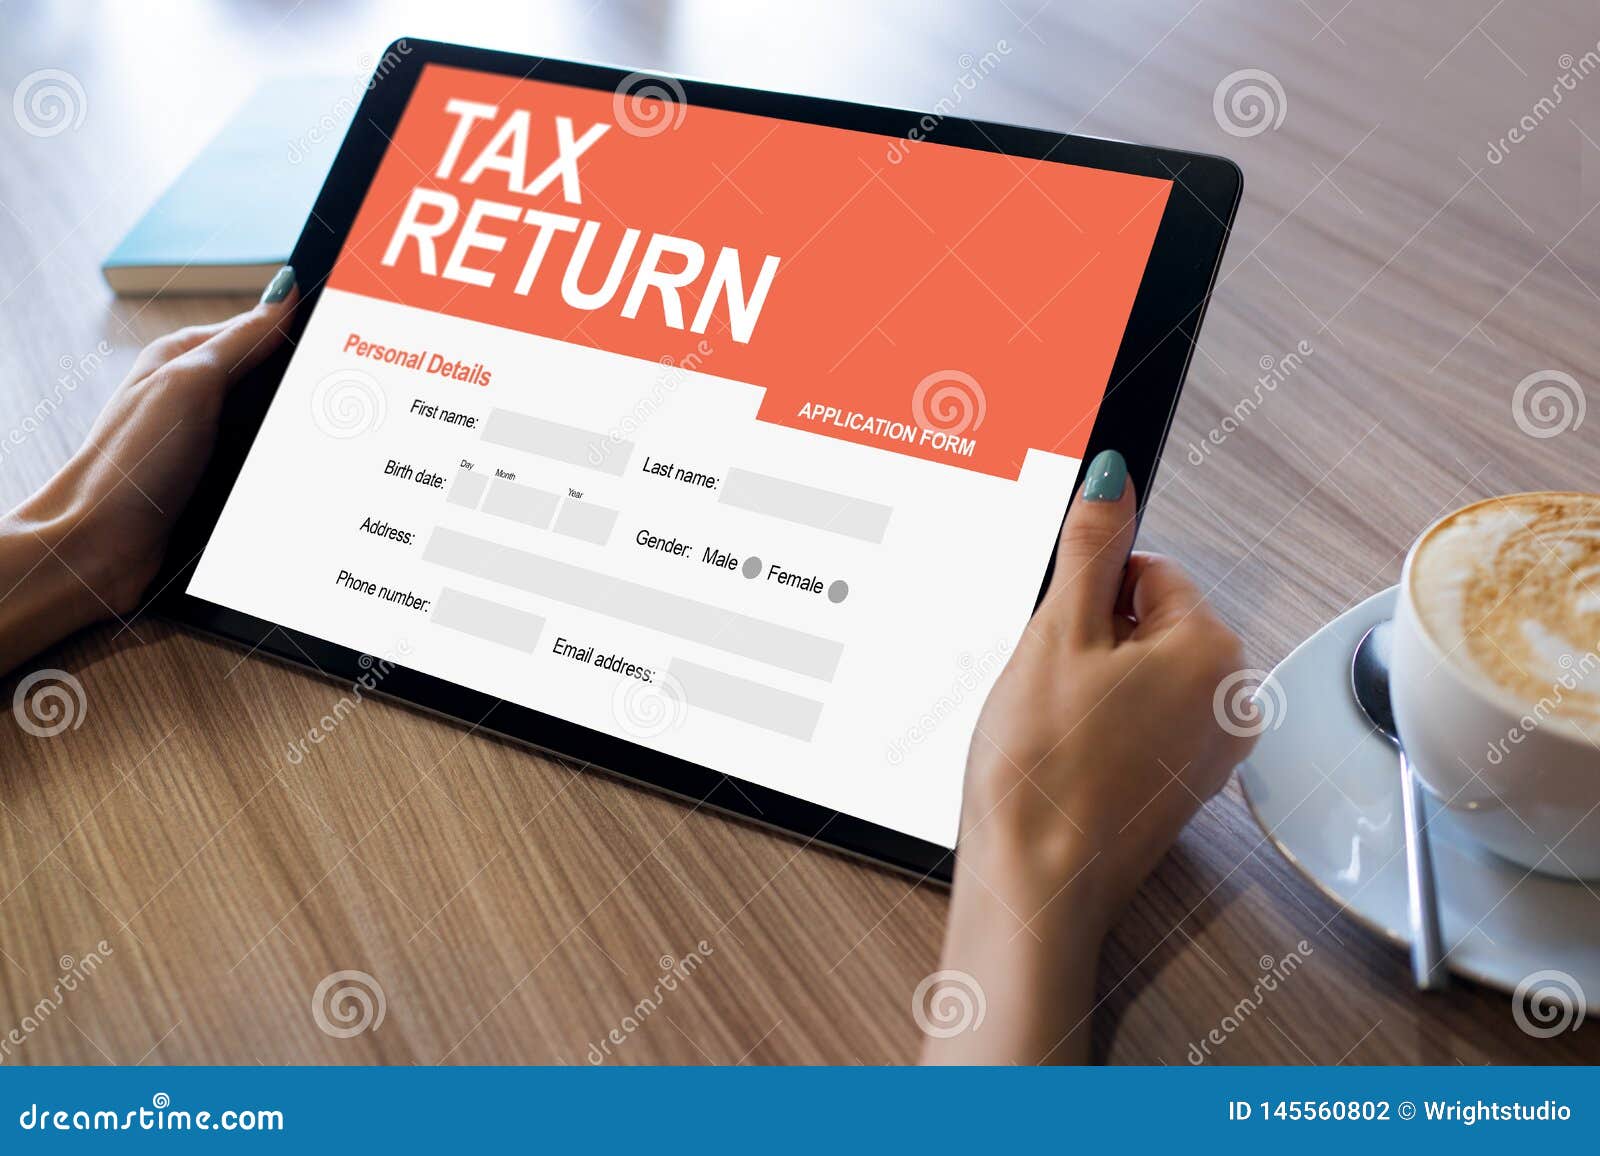 Tax Return Application Online